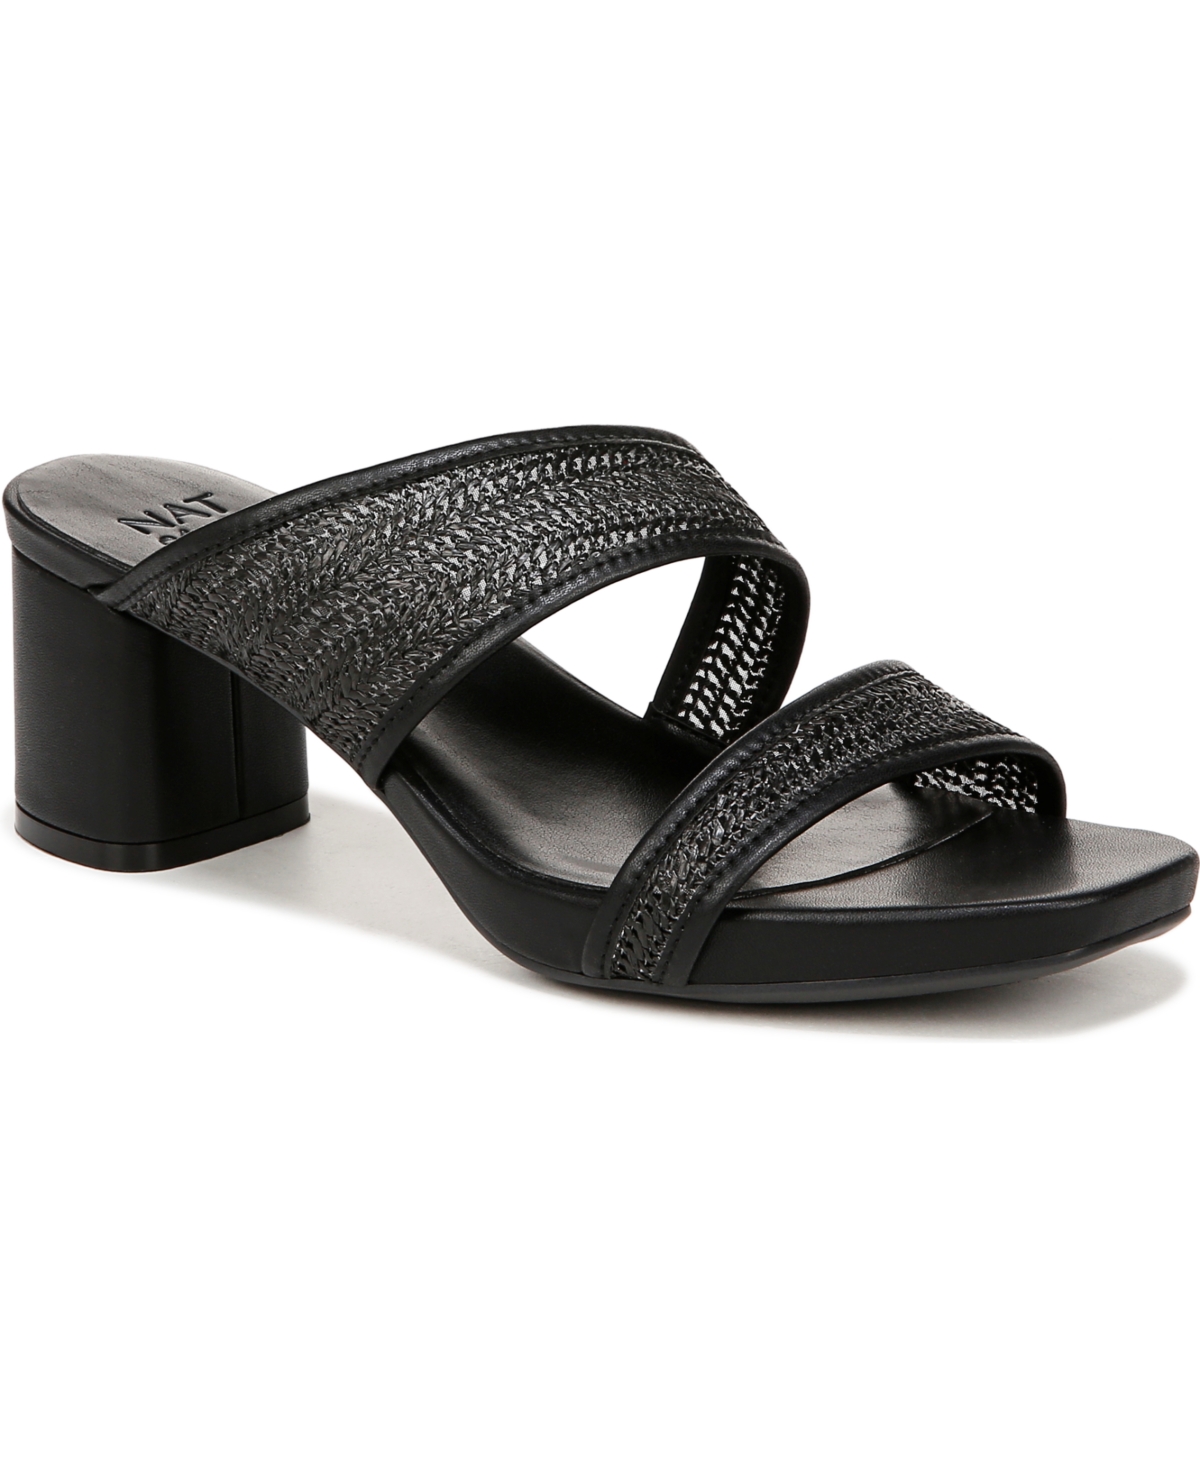 Inez 2 Mule Dress Sandals - Black Fabric/Faux Leather